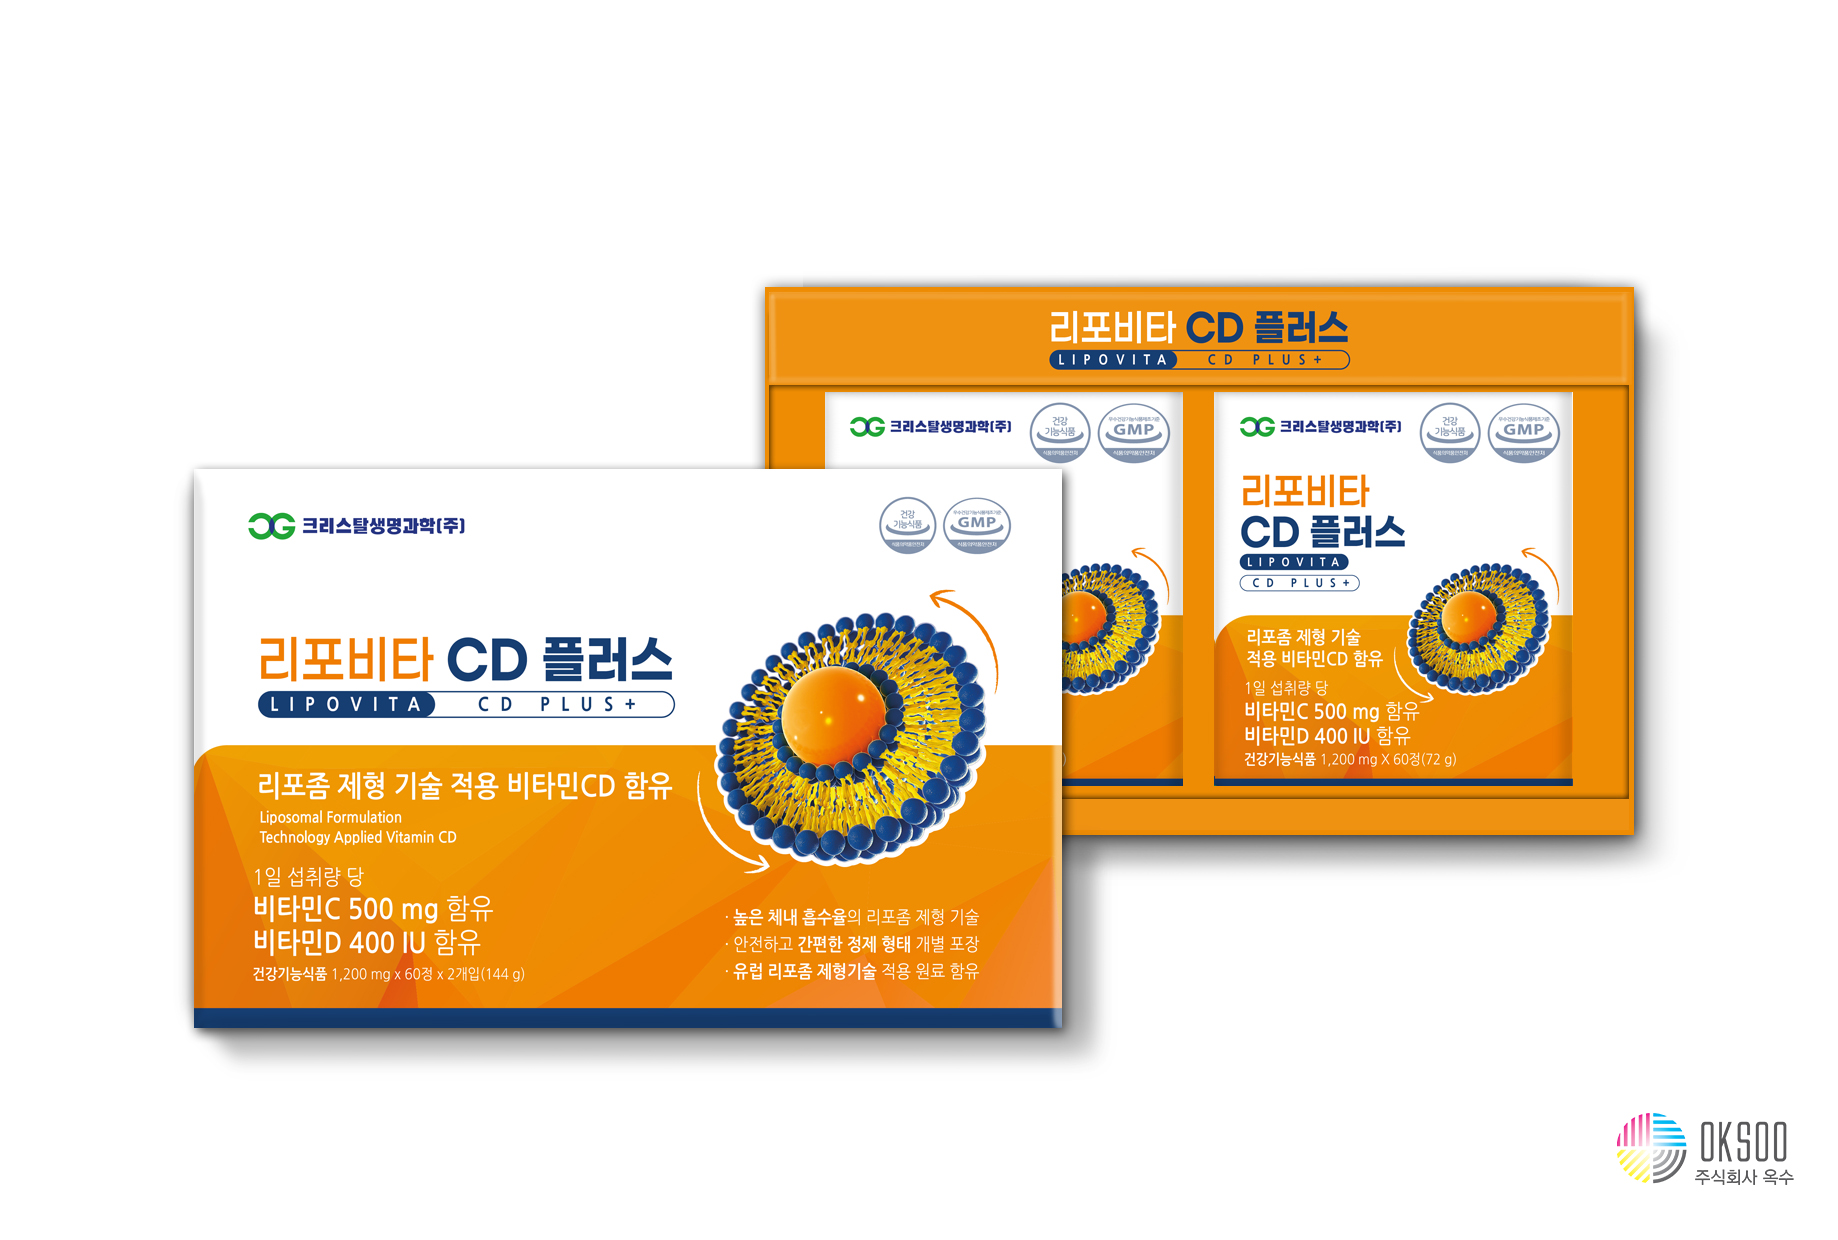 리포비타 CD 플러스 1.2gX60정 2개월분 리포좀 공법 비타민C 비타민D 함유 대표이미지 섬네일